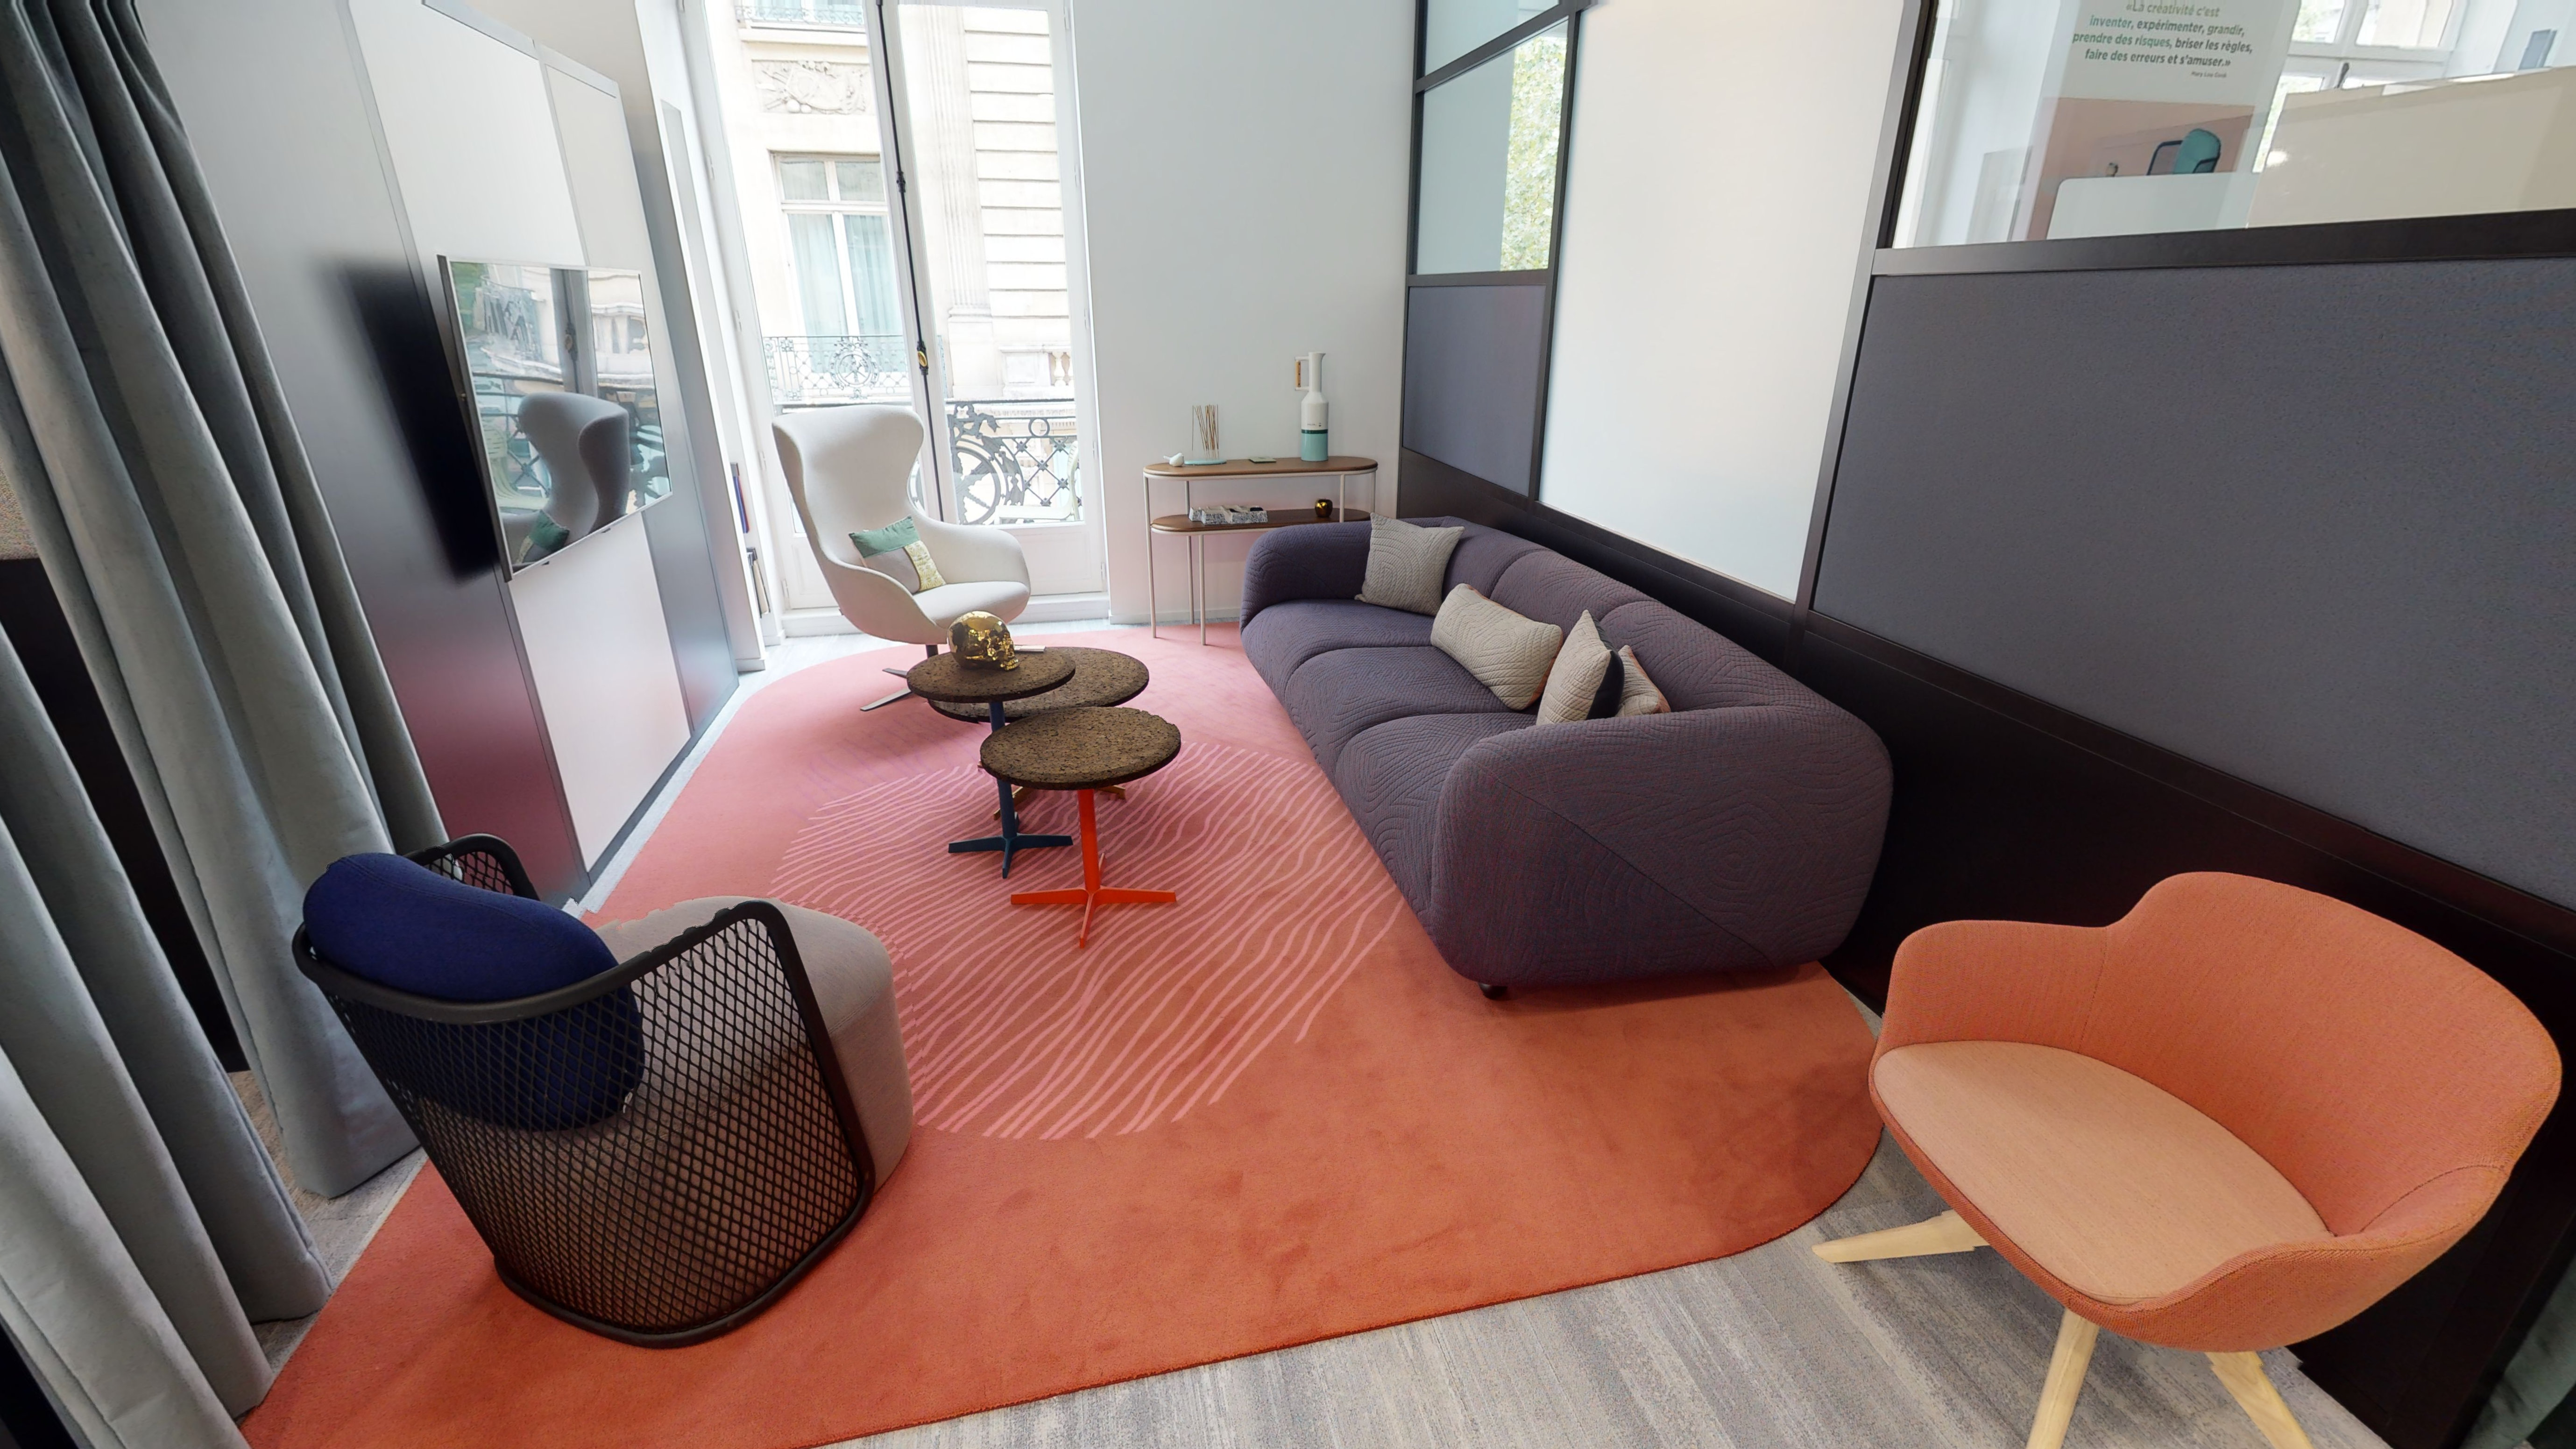 Cider a fait le choix du flex office pour ses collaborateurs afin de favoriser les discussions informelles. Des espaces de réunions semi-ouverts sont disséminés à plusieurs endroits du showroom, isolés phoniquement par d'amples rideaux et des tapis colorés.